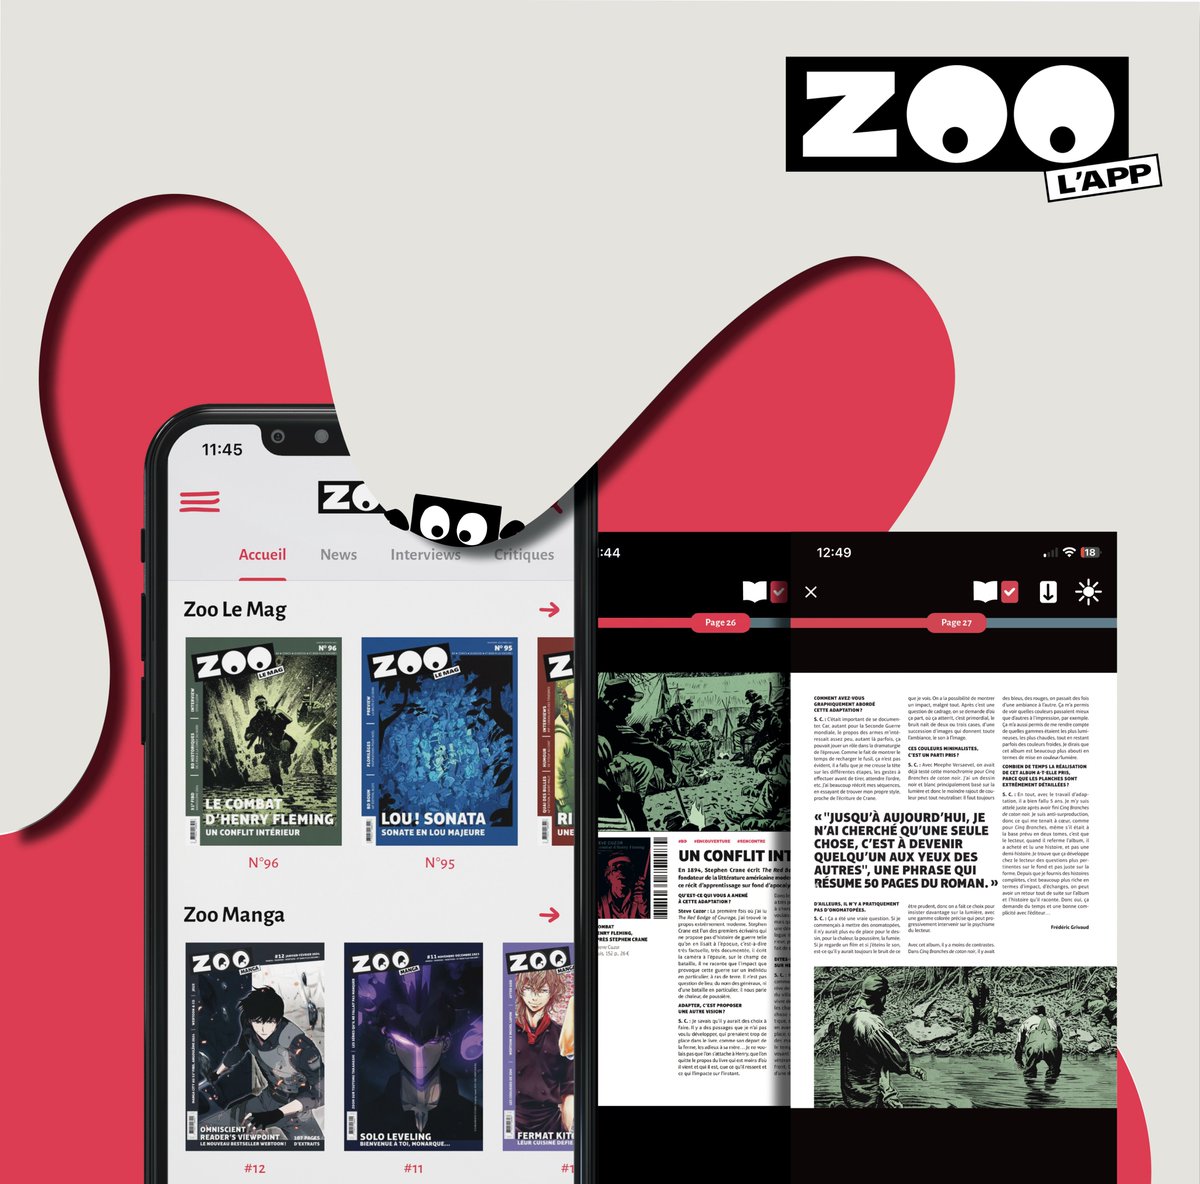 👋 Hello à tous 😊 L'équipe ZOO est fière de vous annoncer l'arrivée de ZOOlemag sur le site Internet et l'application 🛜 🔗 Pour en profiter tout de suite : zoolemag.com/zoo-le-mag Zozo vous souhaite une bonne journée et une bonne lecture 👀